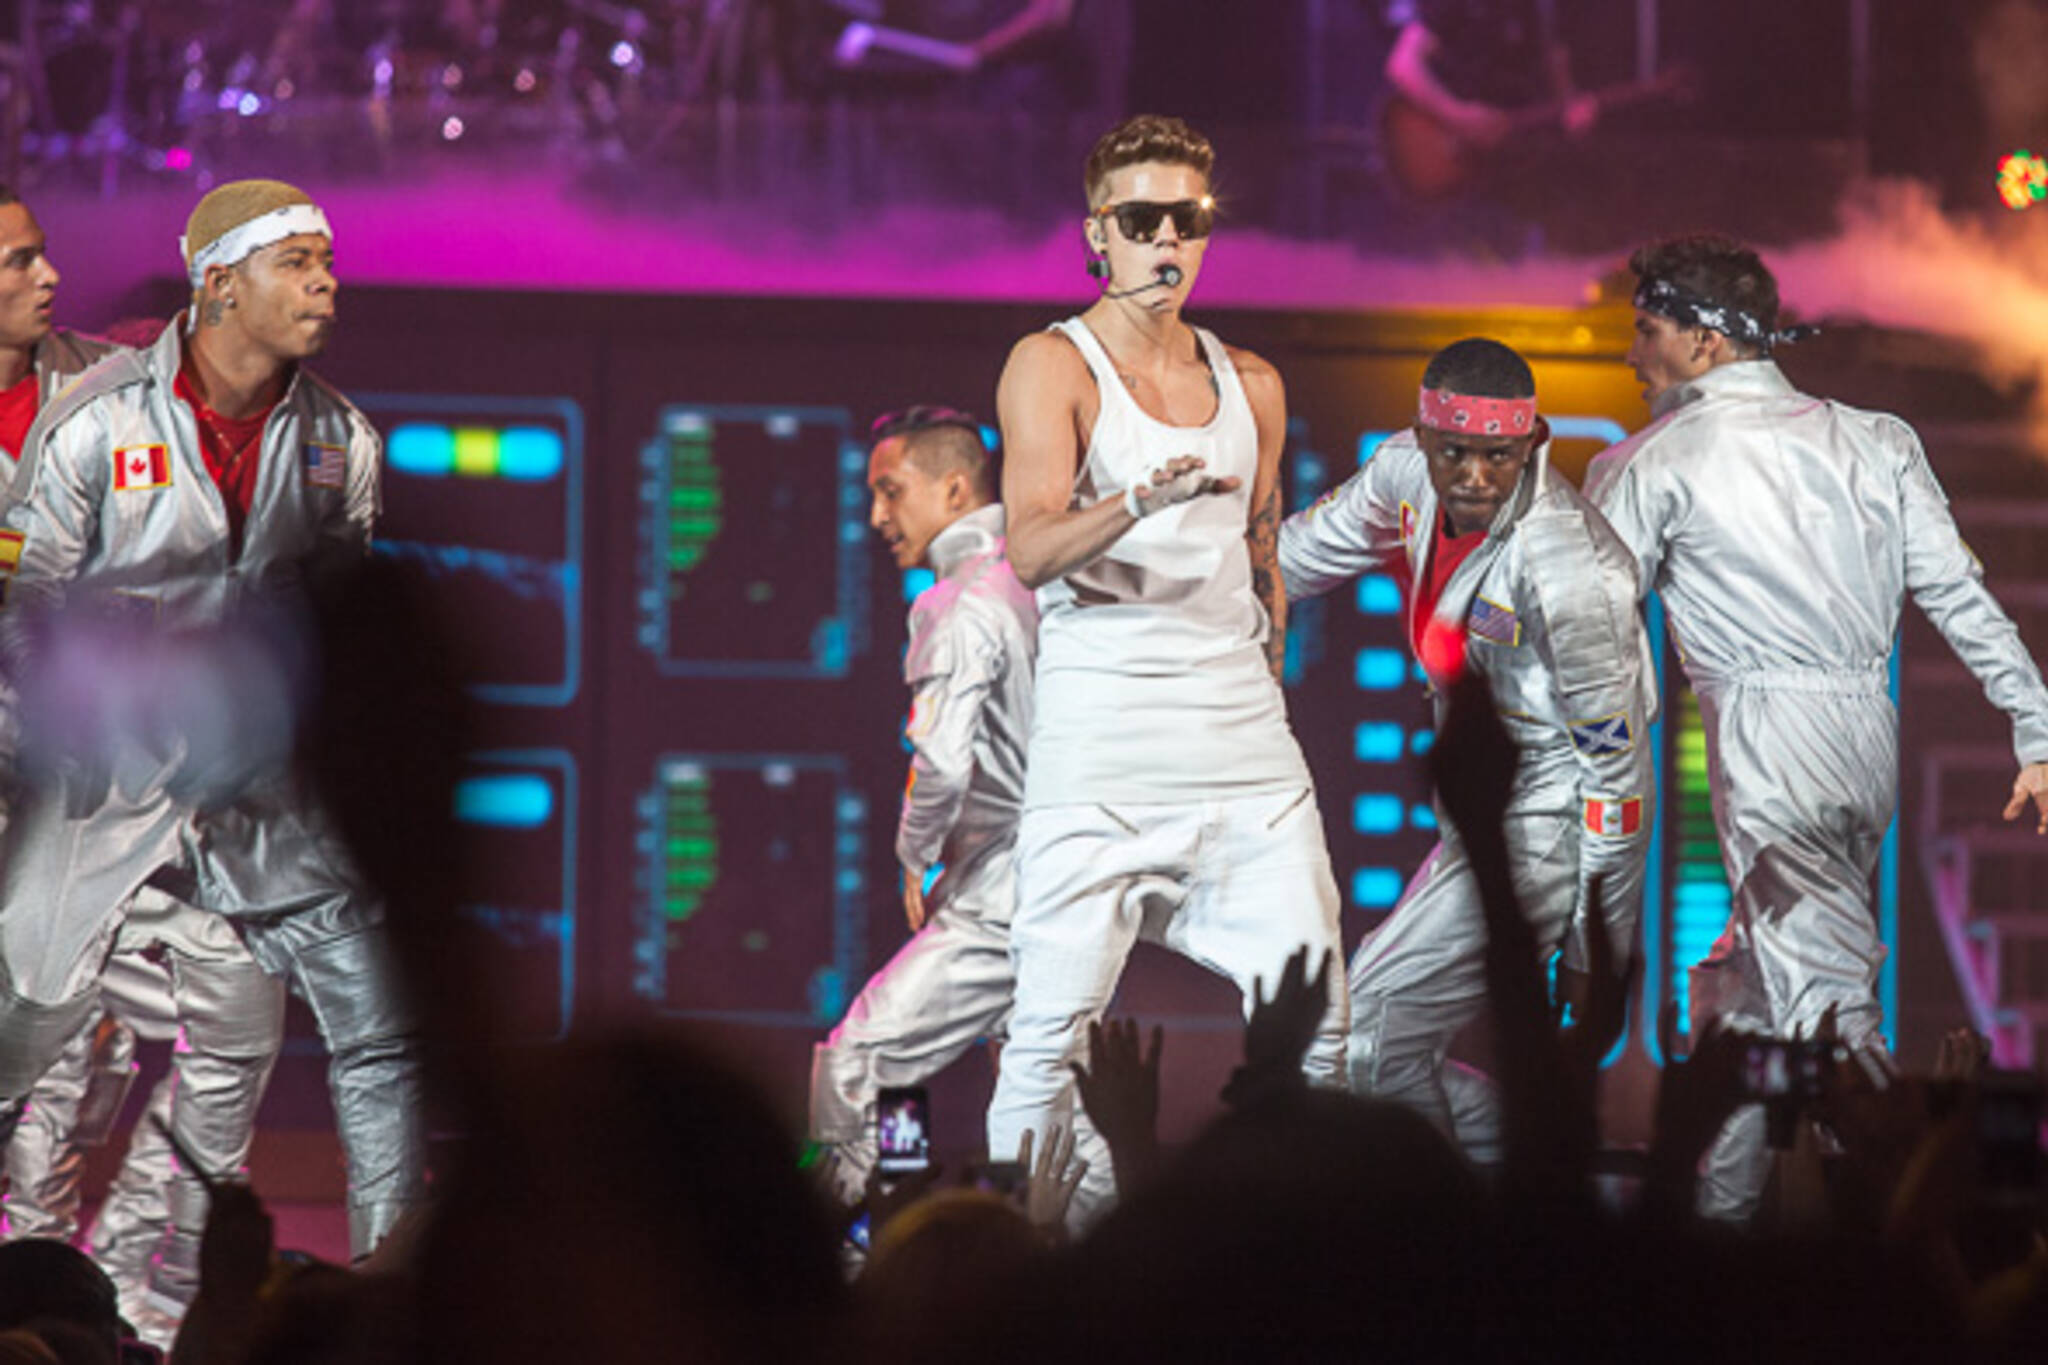 Justin Bieber super fans radiate joy at Toronto concert